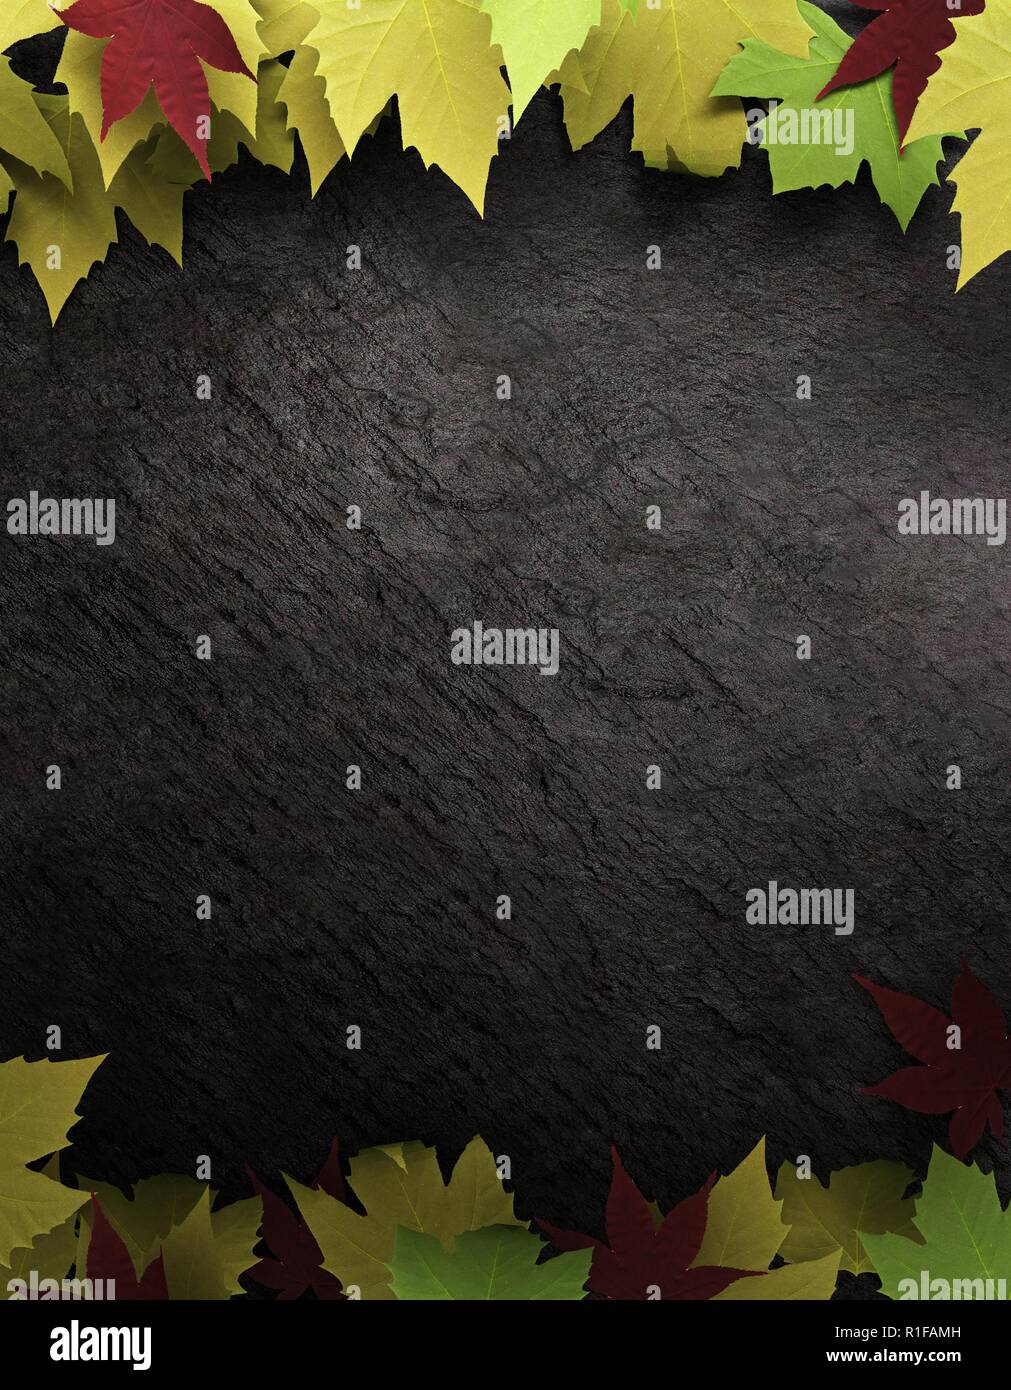 Laub auf dunklem Schiefer Hintergrund. Bunte Blätter im Herbst gefallen. 3D-Rendering Stockfoto